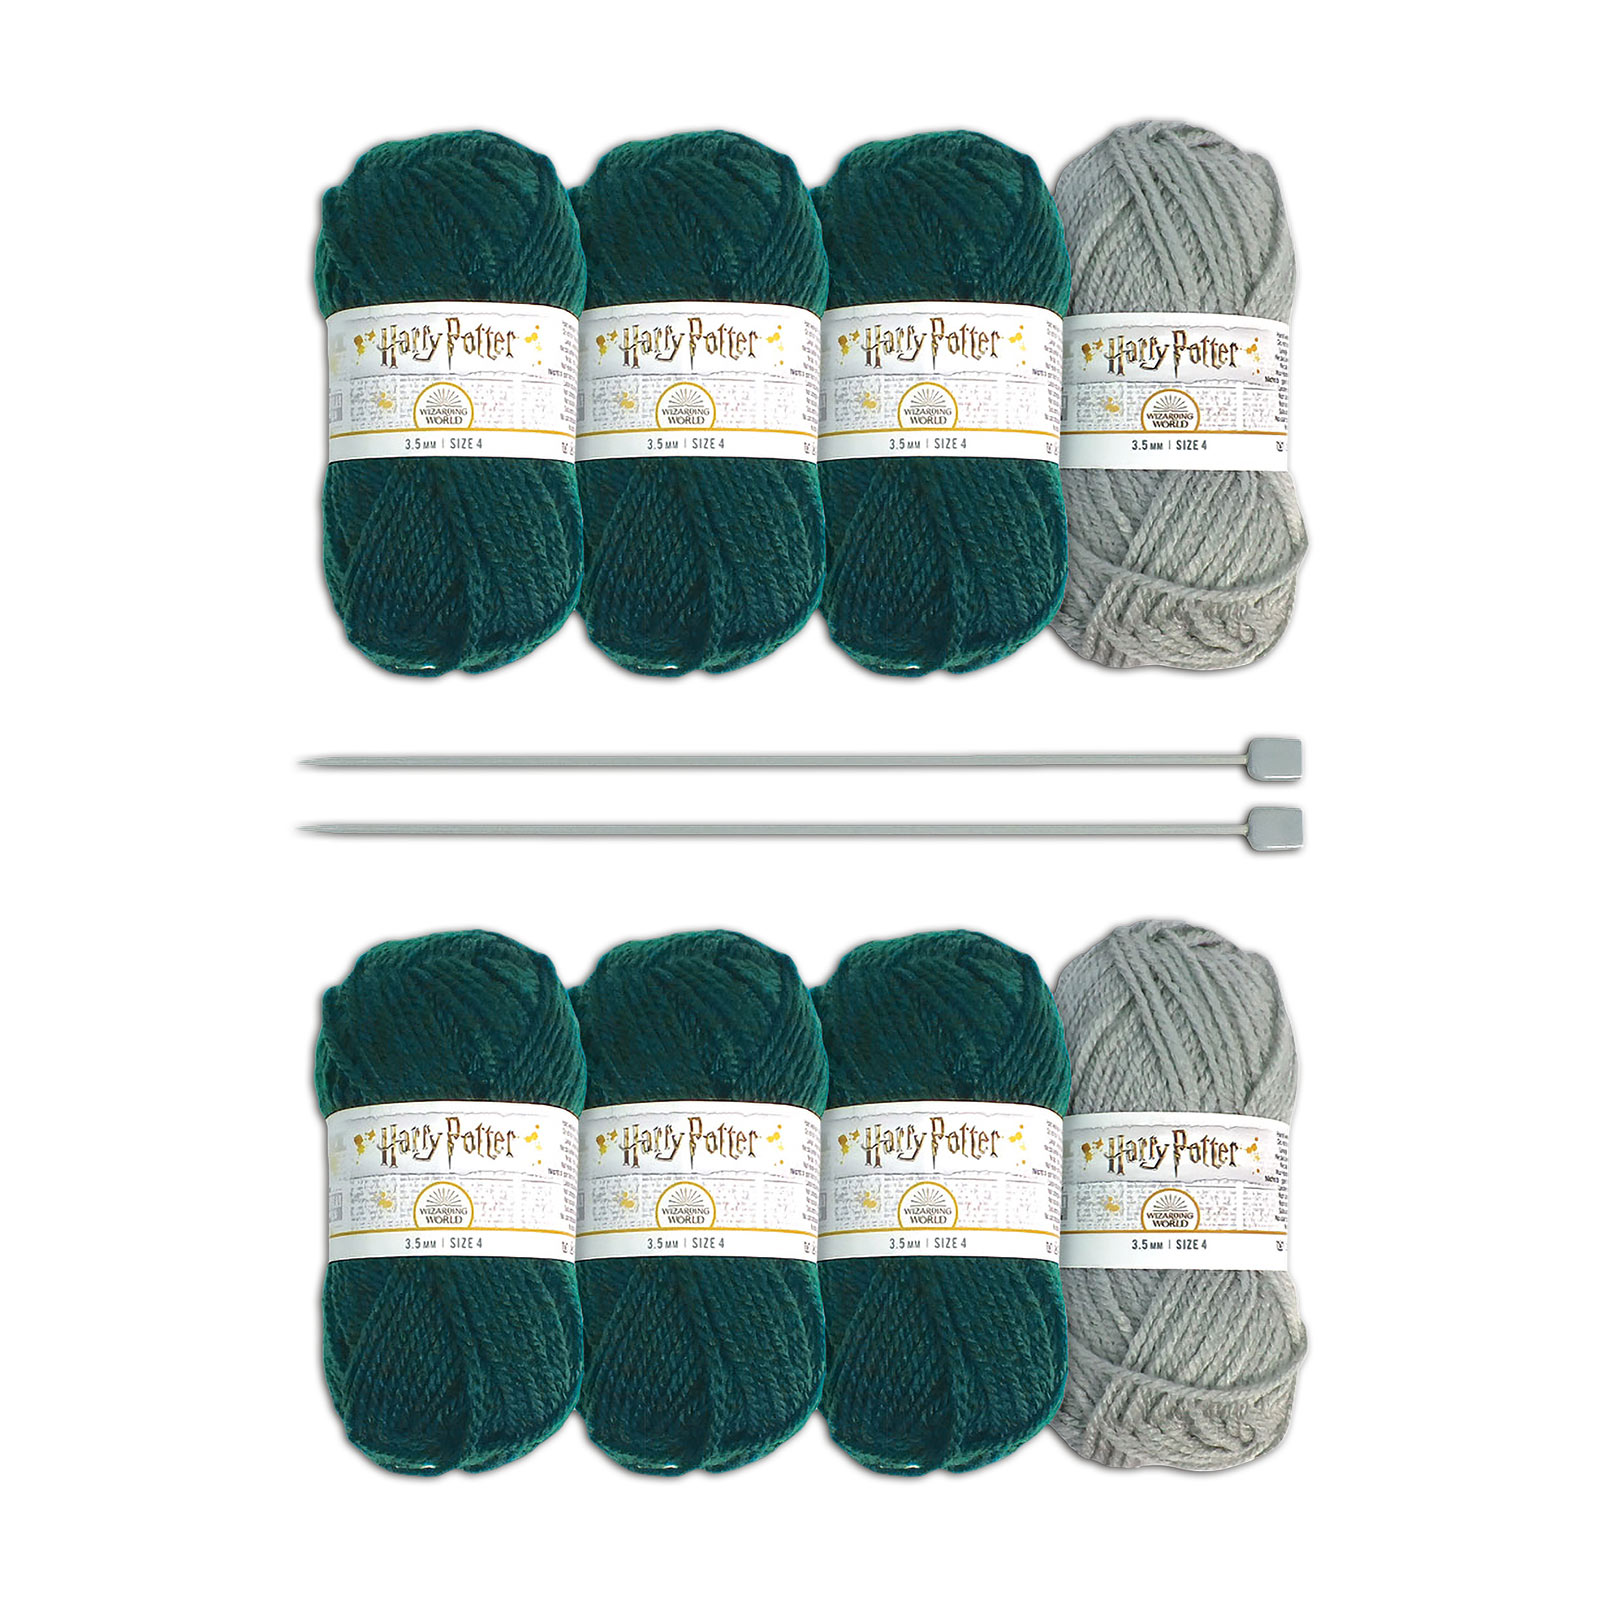 Harry Potter - Slytherin Gloves & Socks Knitting Set